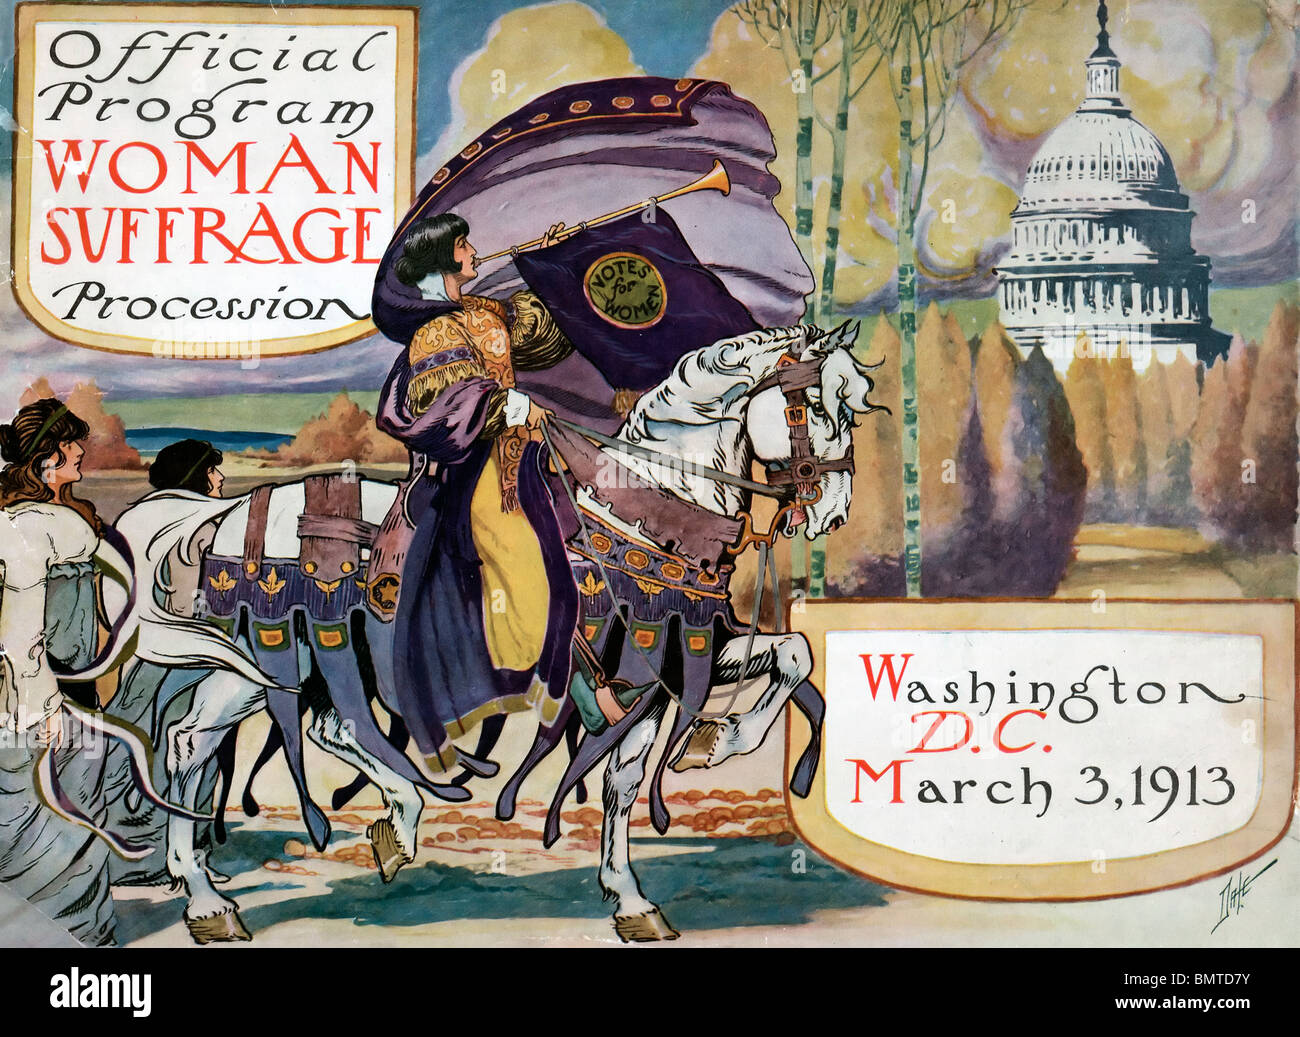 Programma ufficiale - Donna suffragio processione, Washington D.C. Marzo 3, 1913 Foto Stock